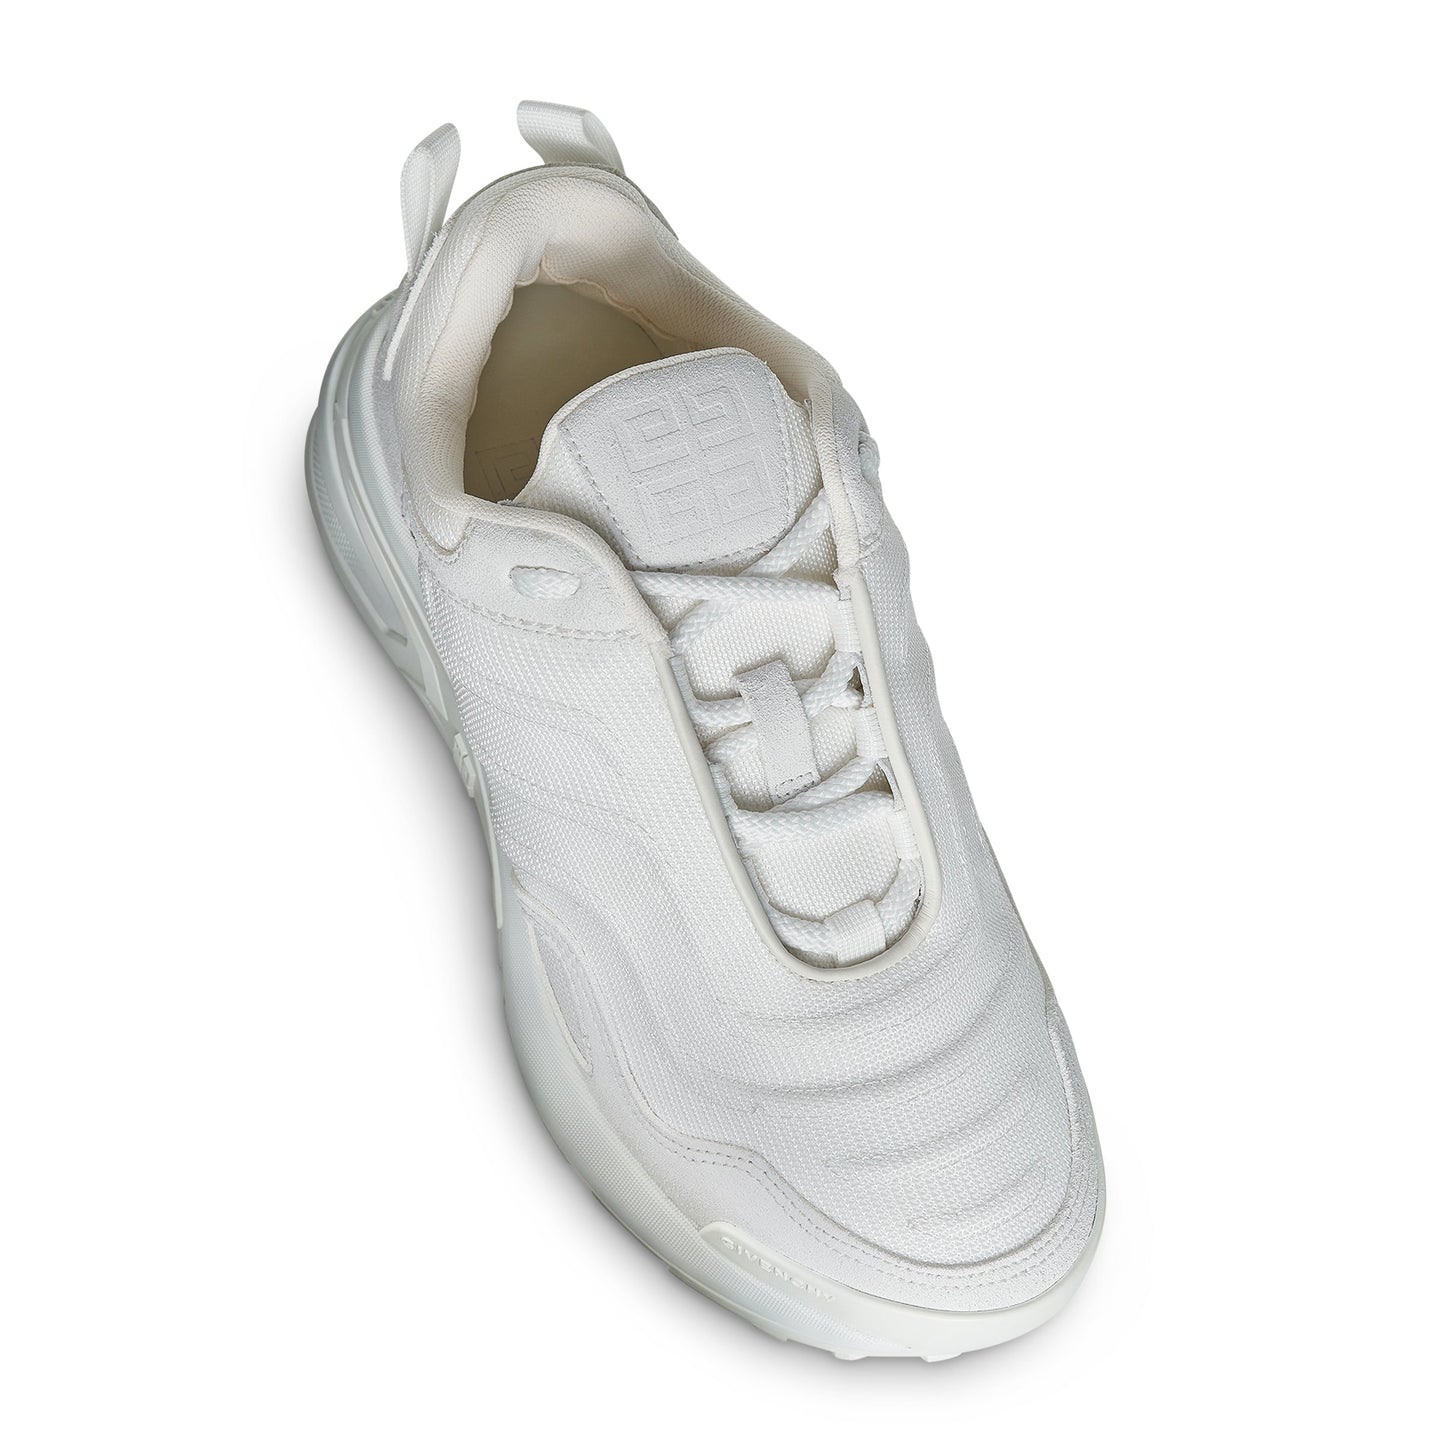 GIV 1 Light Runner Sneakers in White